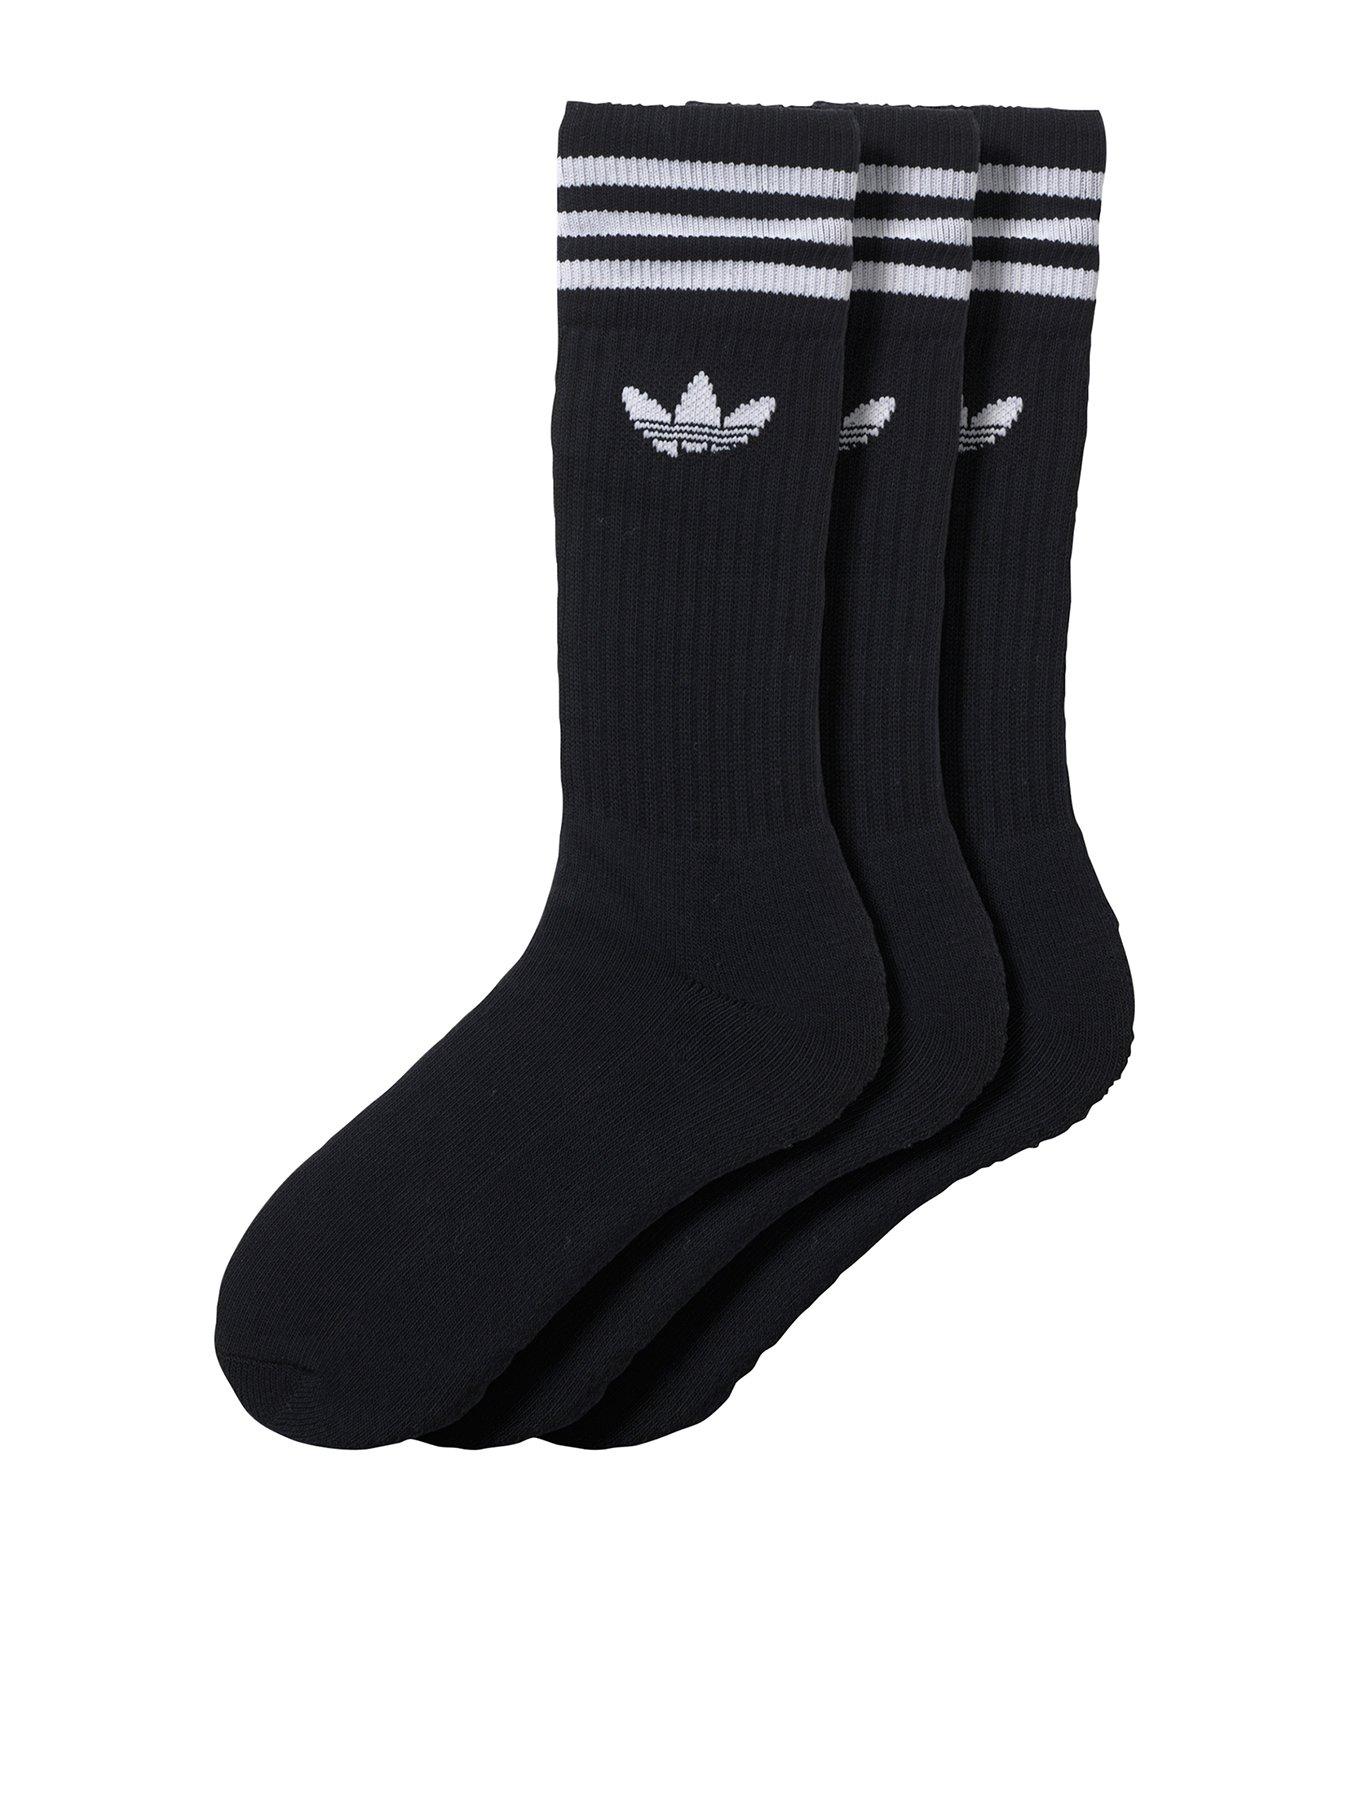 white adidas socks mens